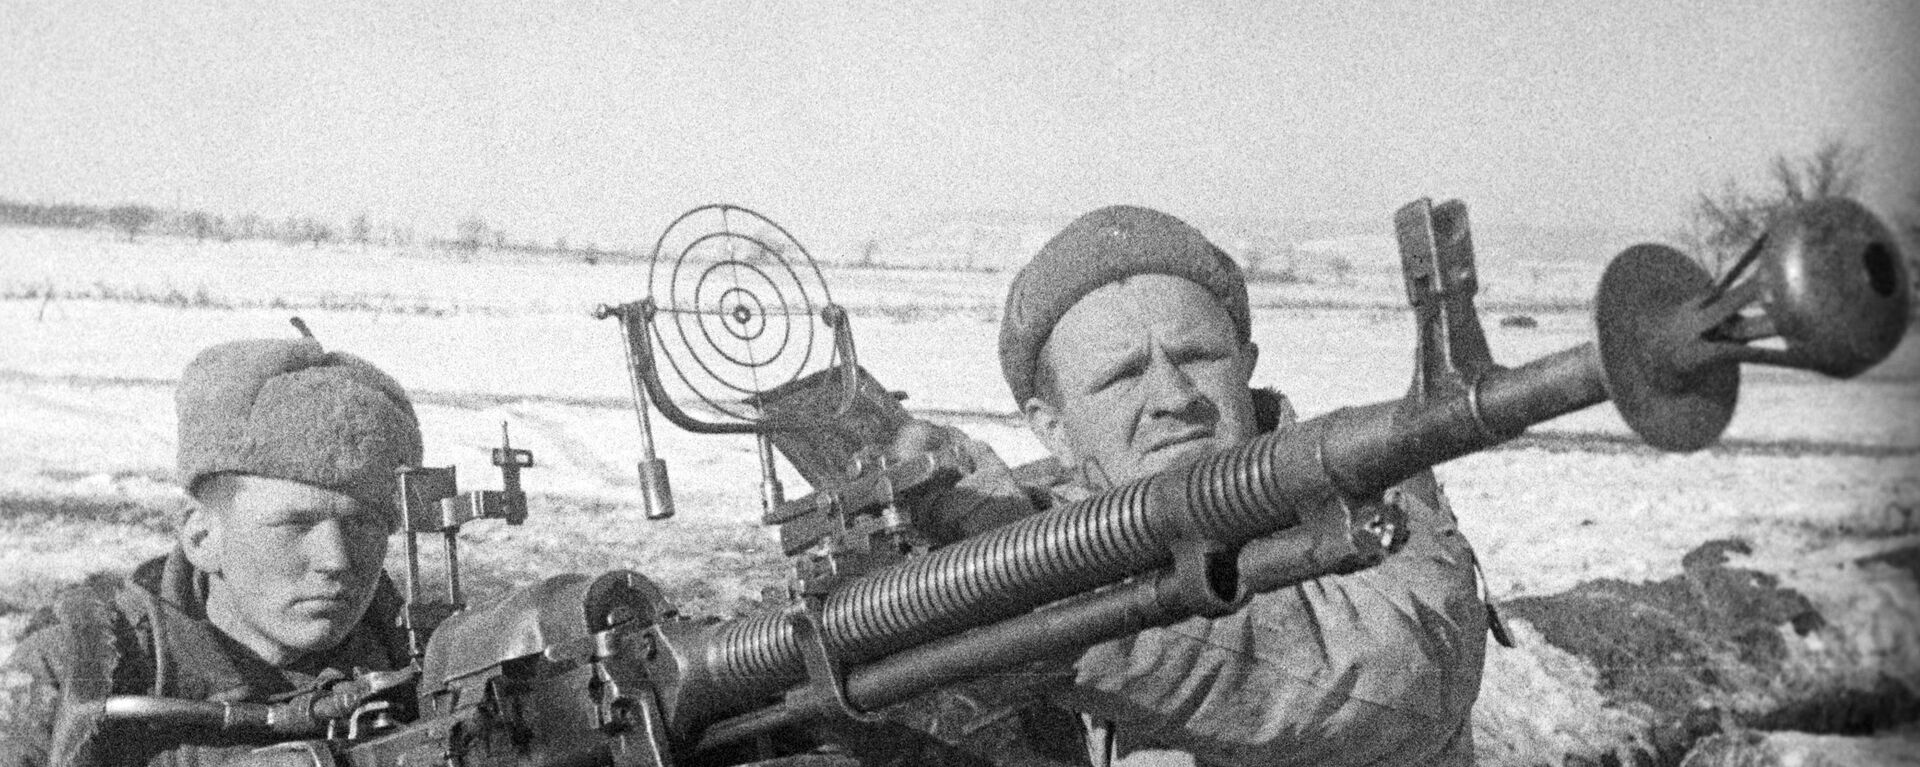 Los efectivos de la defensa antiaérea soviética durante la Segunda Guerra Mundial - Sputnik Mundo, 1920, 24.12.2021